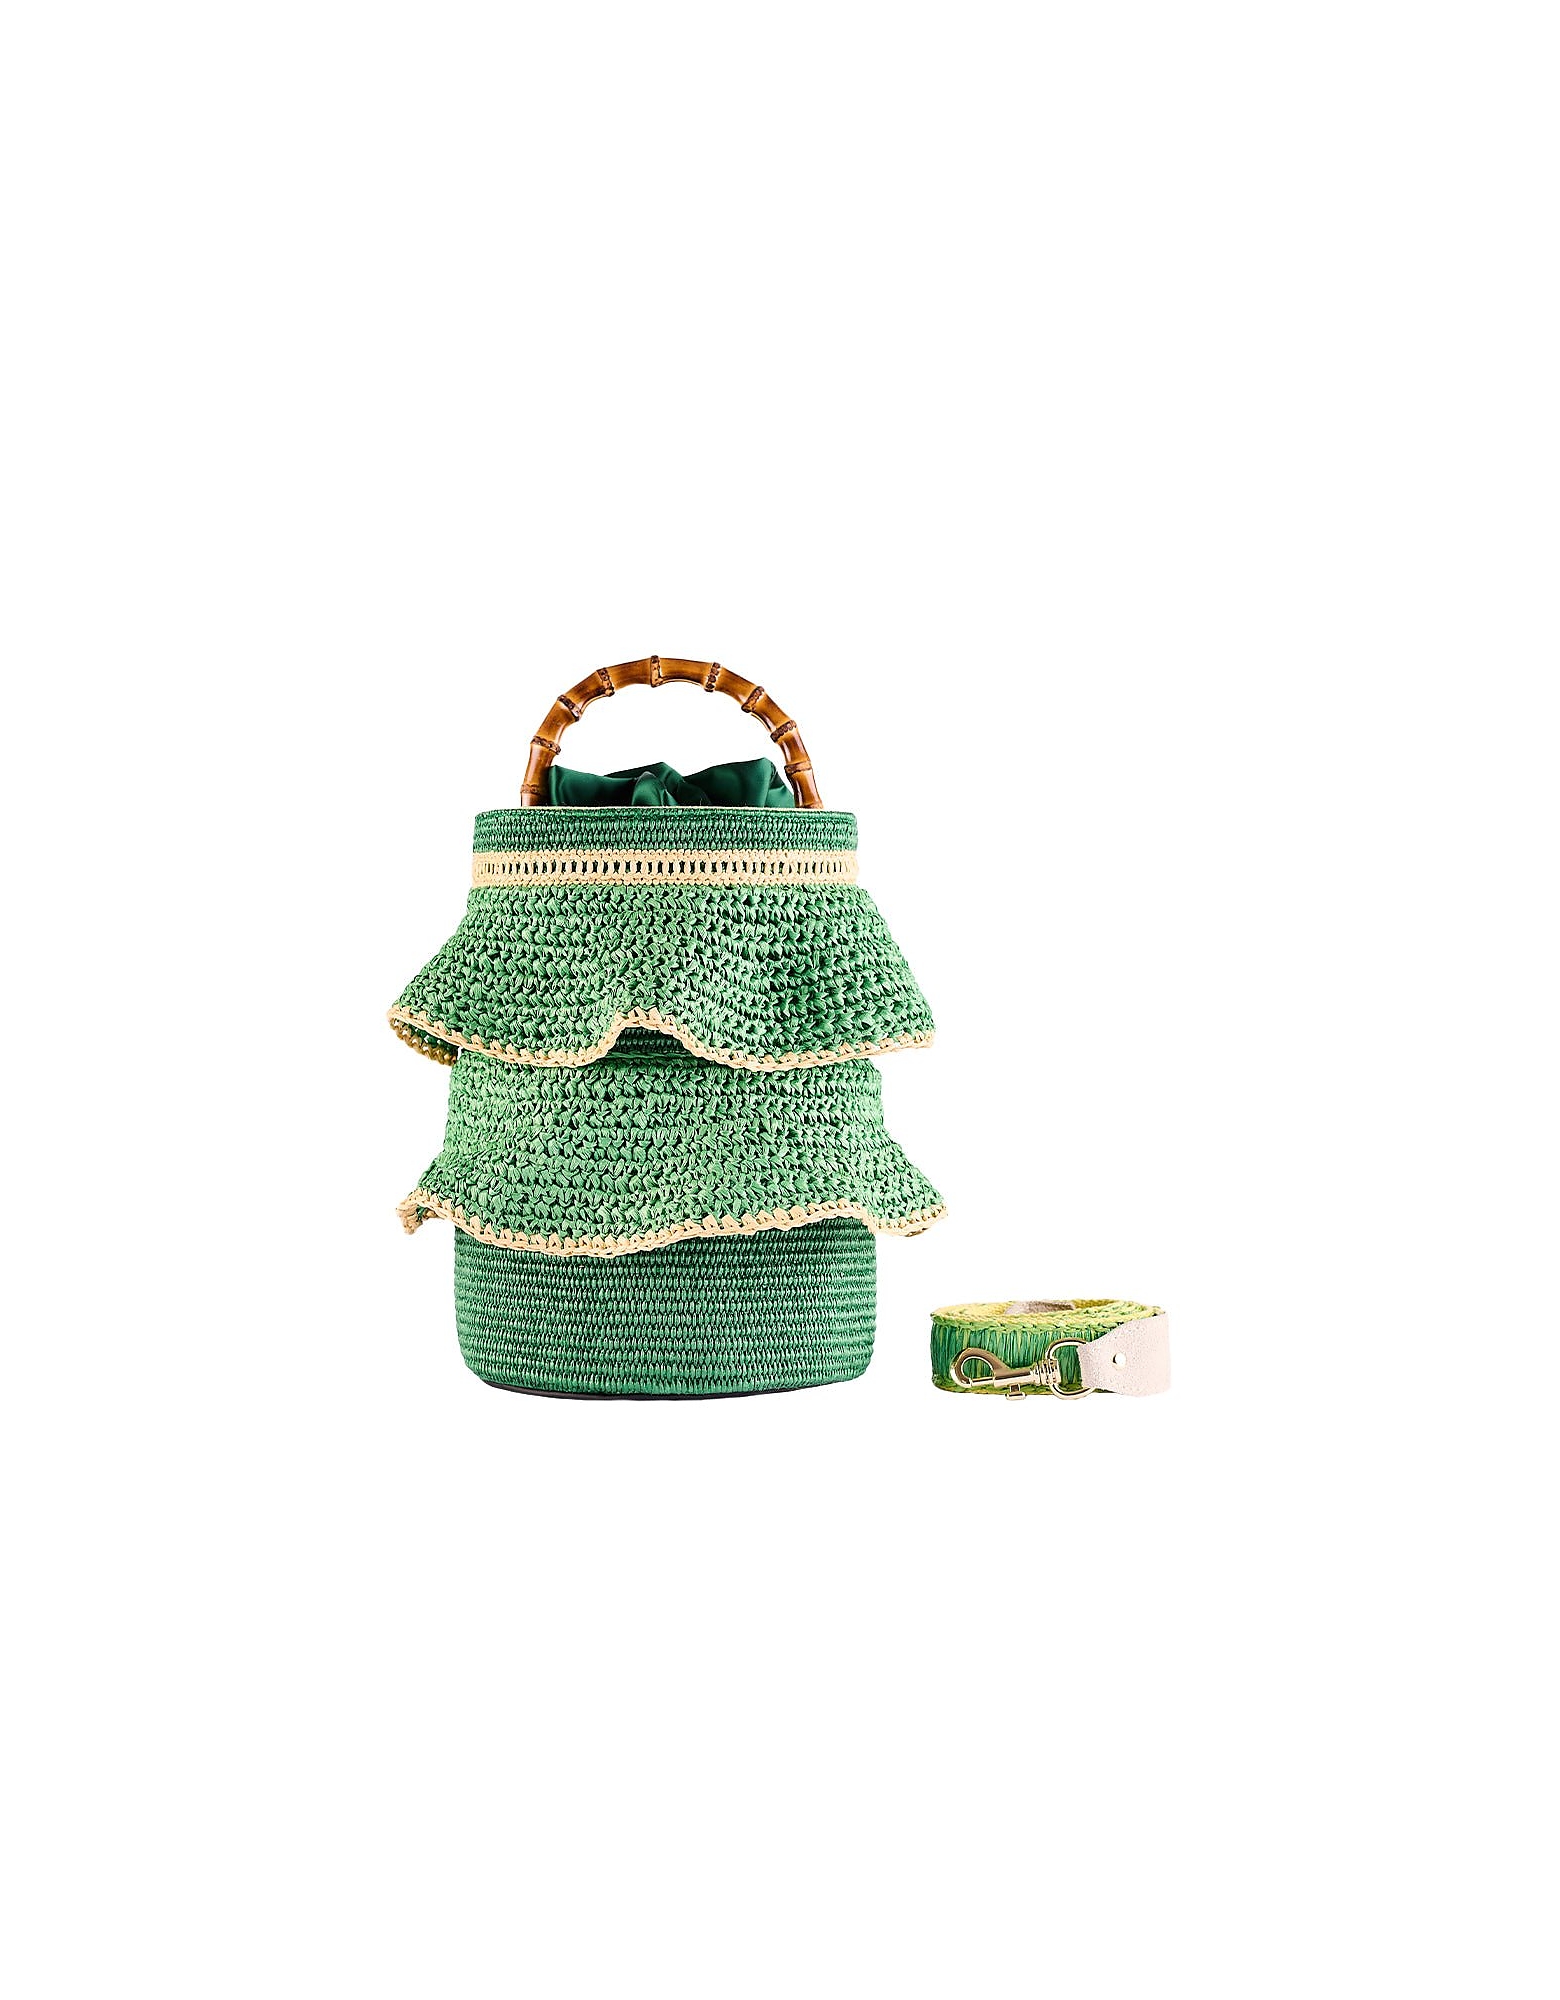 Viamailbag Designer Handbags Bonsai Fan - Top Handle Bag In Brown